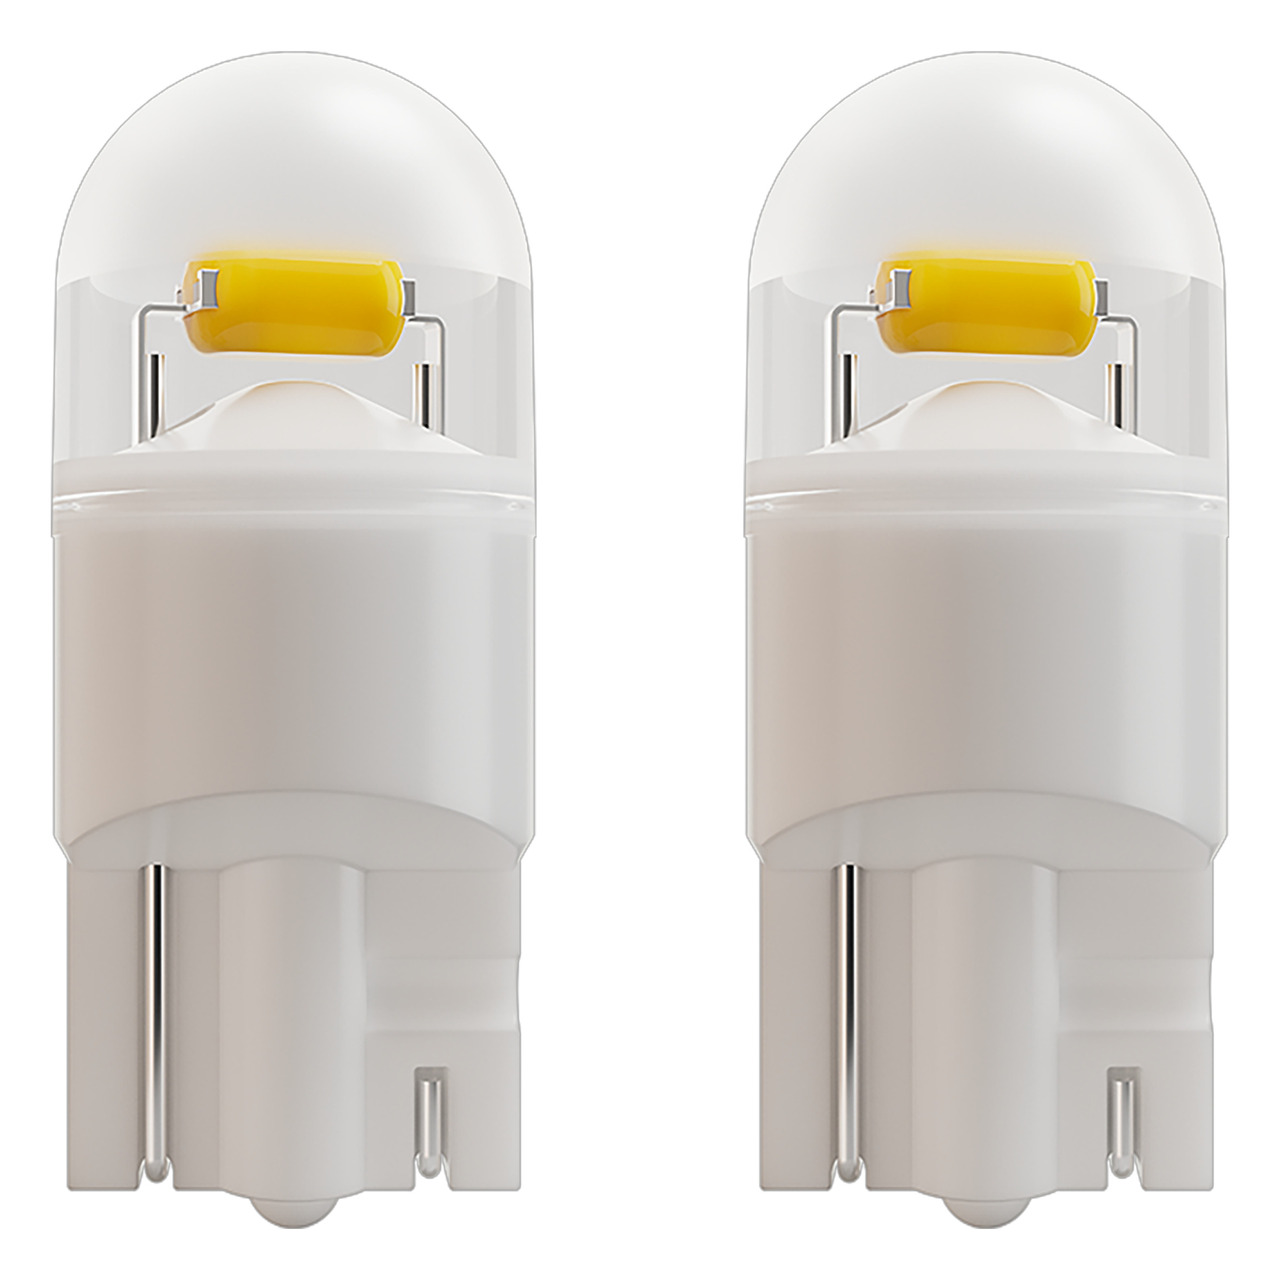 OSRAM Kfz-LED-Nachrüstlampe NIGHT BREAKER(R) LED W5W- für Stand- und Positionslicht- StVZO-konform